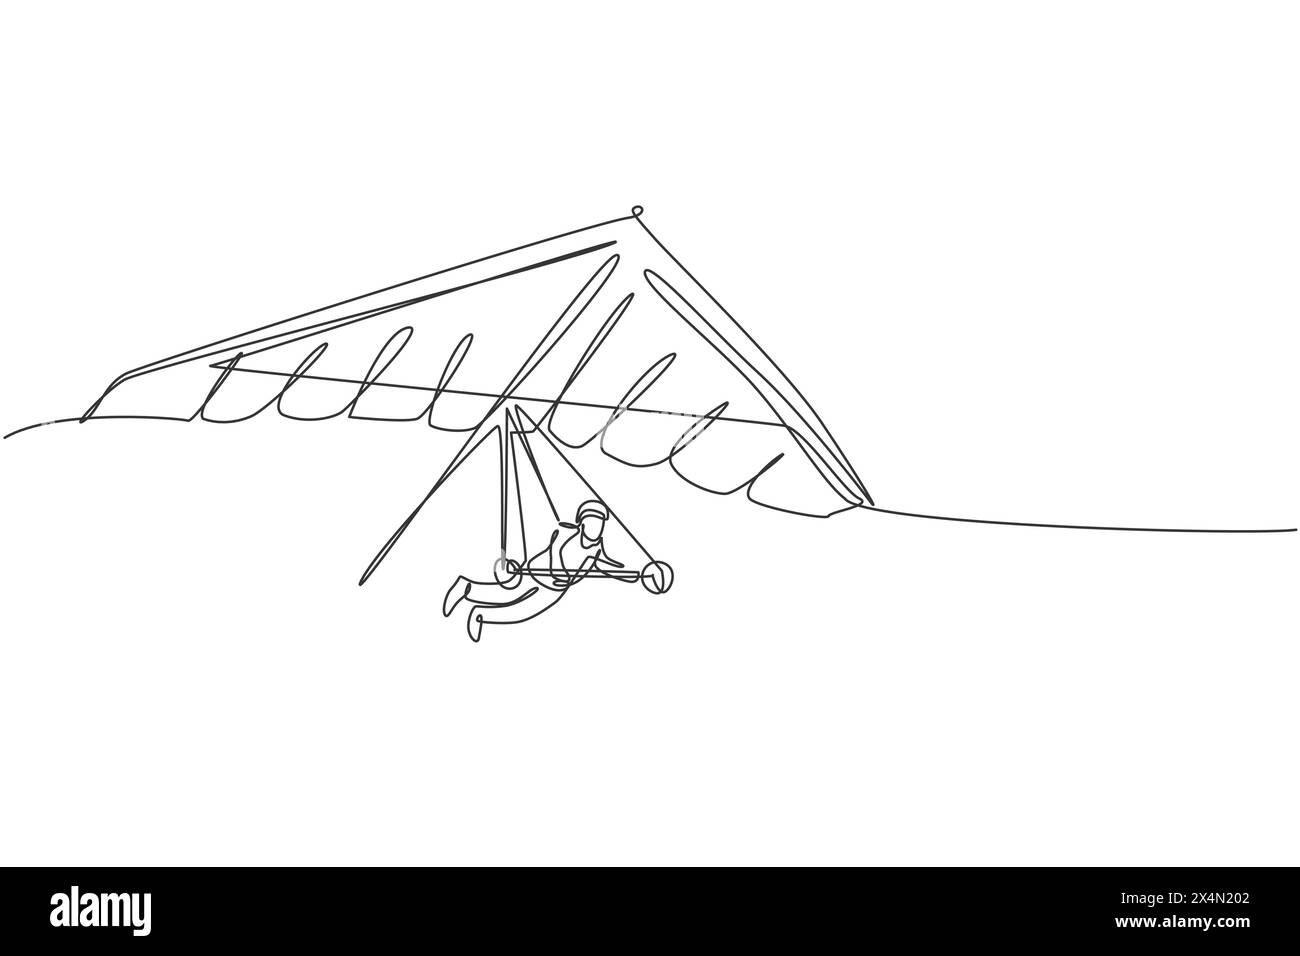 Eine einzelne Linienzeichnung des jungen sportlichen Mannes, der mit einem Fallschirm auf der Himmelsvektorgrafik fliegt. Extreme Sport-Konzept. Modern c Stock Vektor